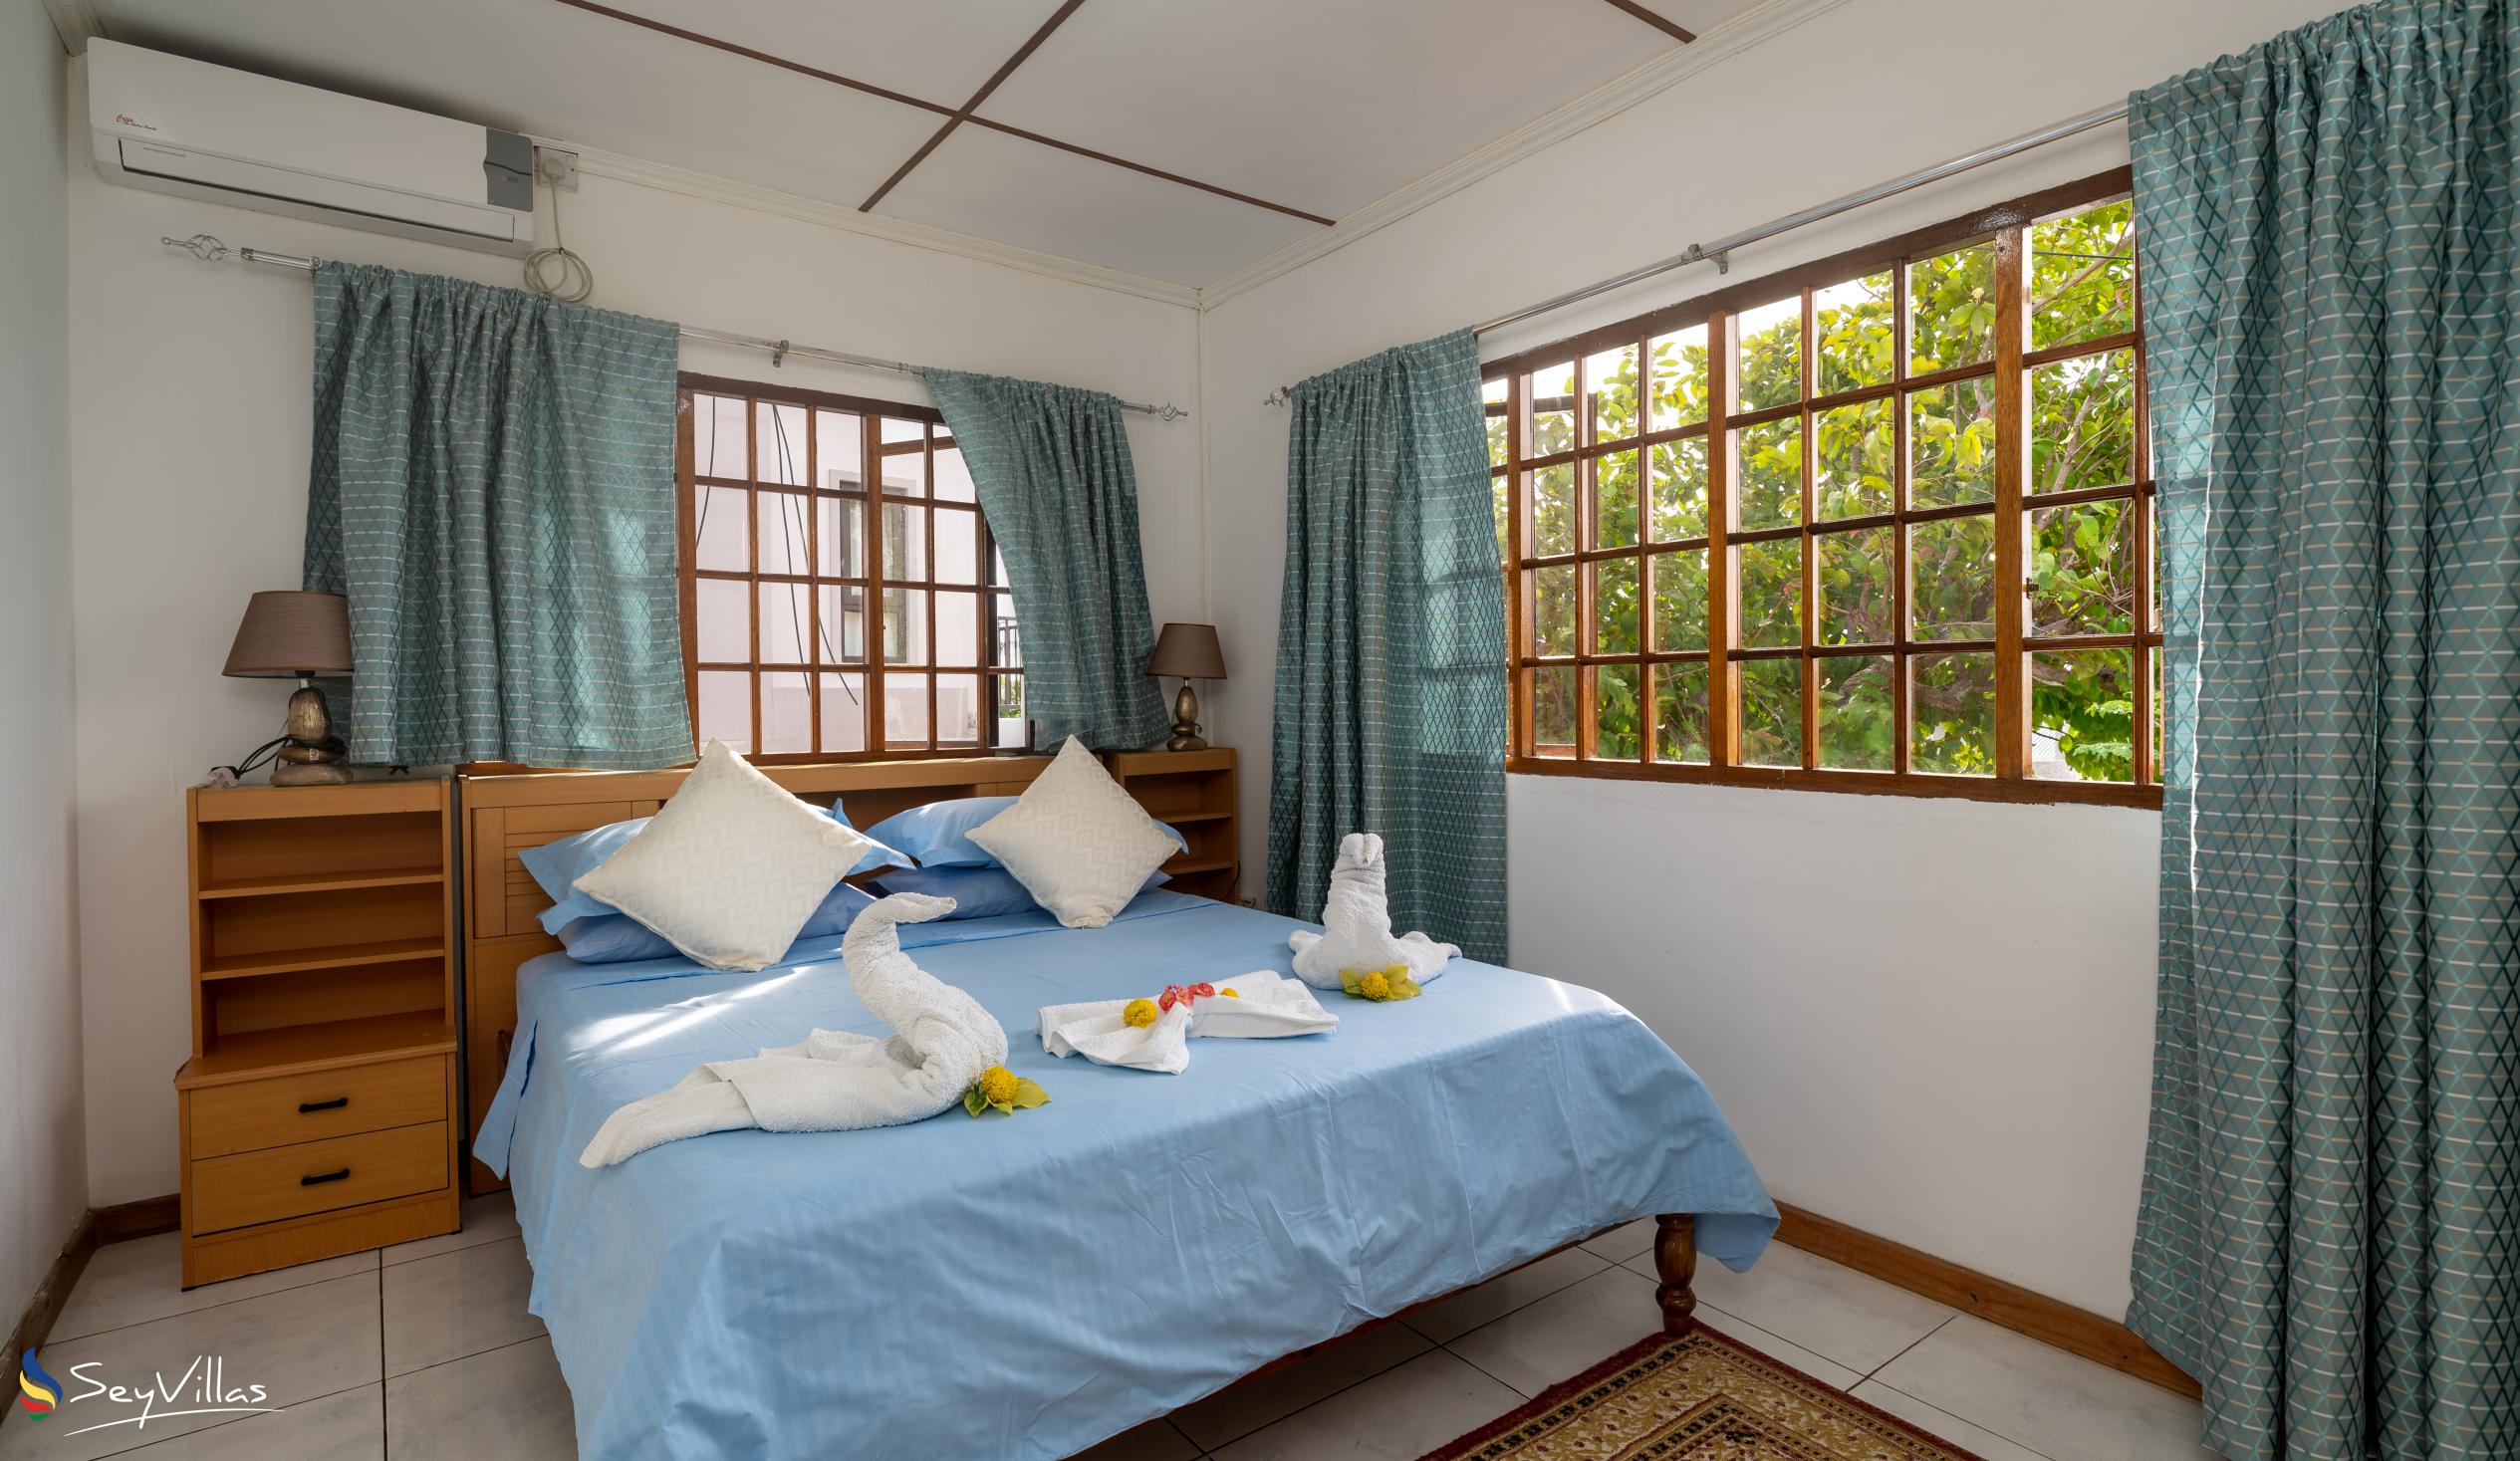 Foto 12: Villa Rousseau - Villa 3 chambres - Mahé (Seychelles)